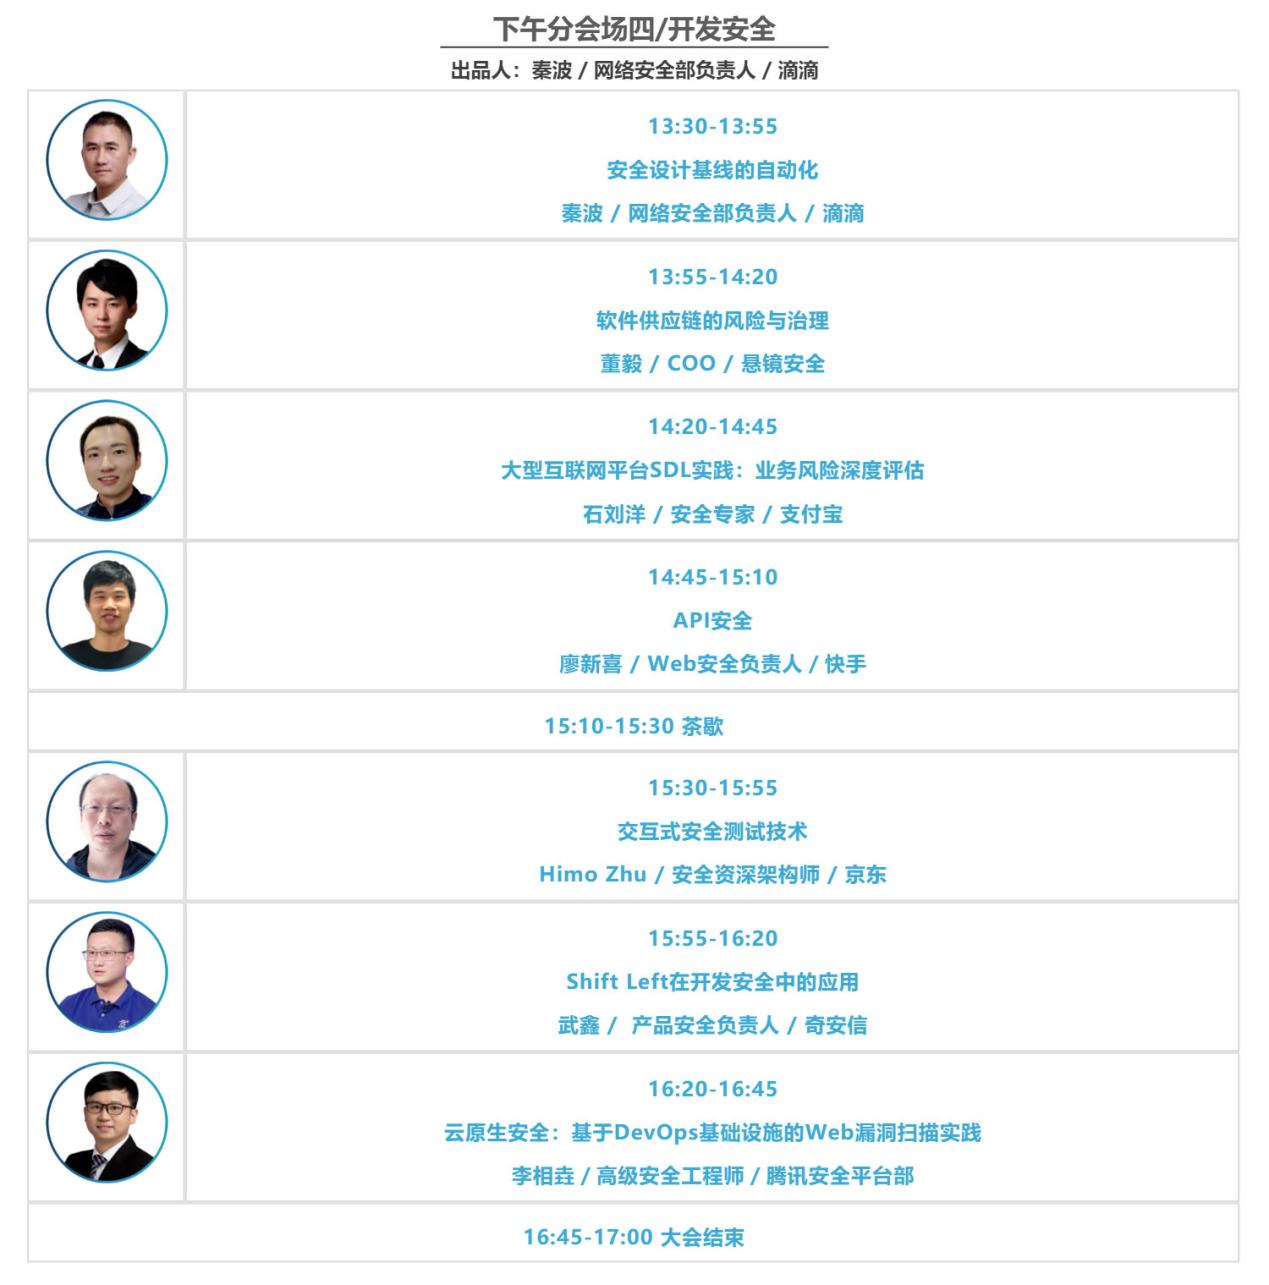 最终议程！EISS-2021企业信息安全峰会之北京站 5.14（周五）插图6